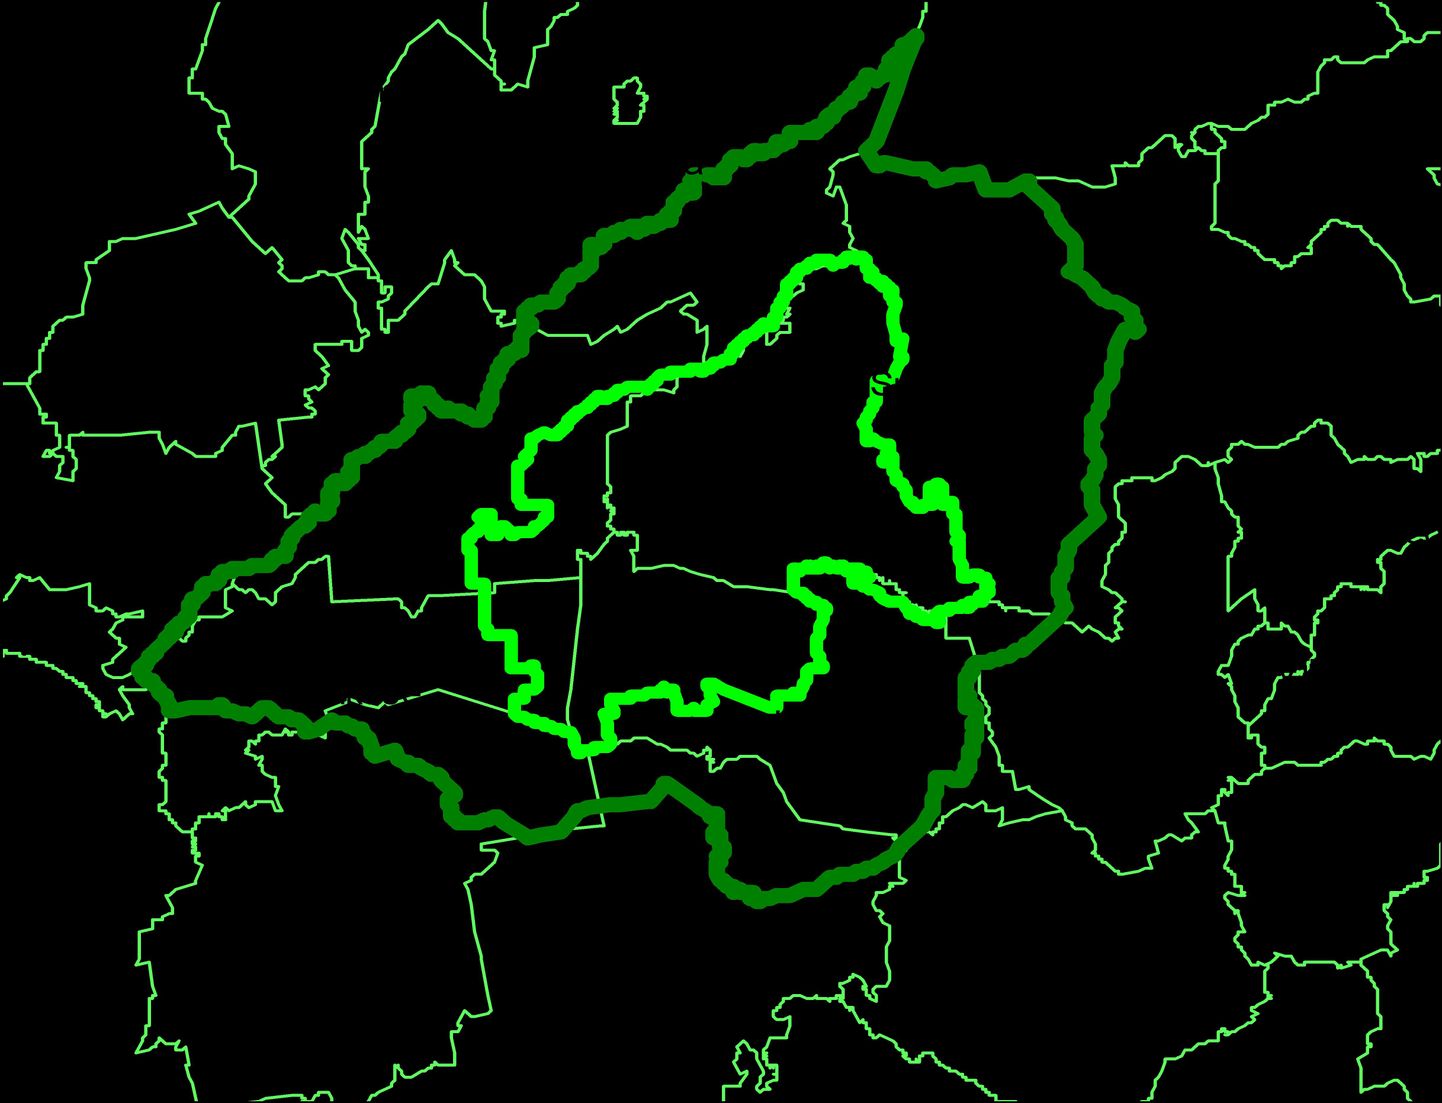 Soomaa piirkonna all mõistetakse Pärnu ja Viljandi maakonnas olevat Soomaa rahvusparki koos ümbritseva mõjualaga. Helerohelisega on tähistatudSoomaa ala, tumeroheline laiem ala on planeeringu ala.